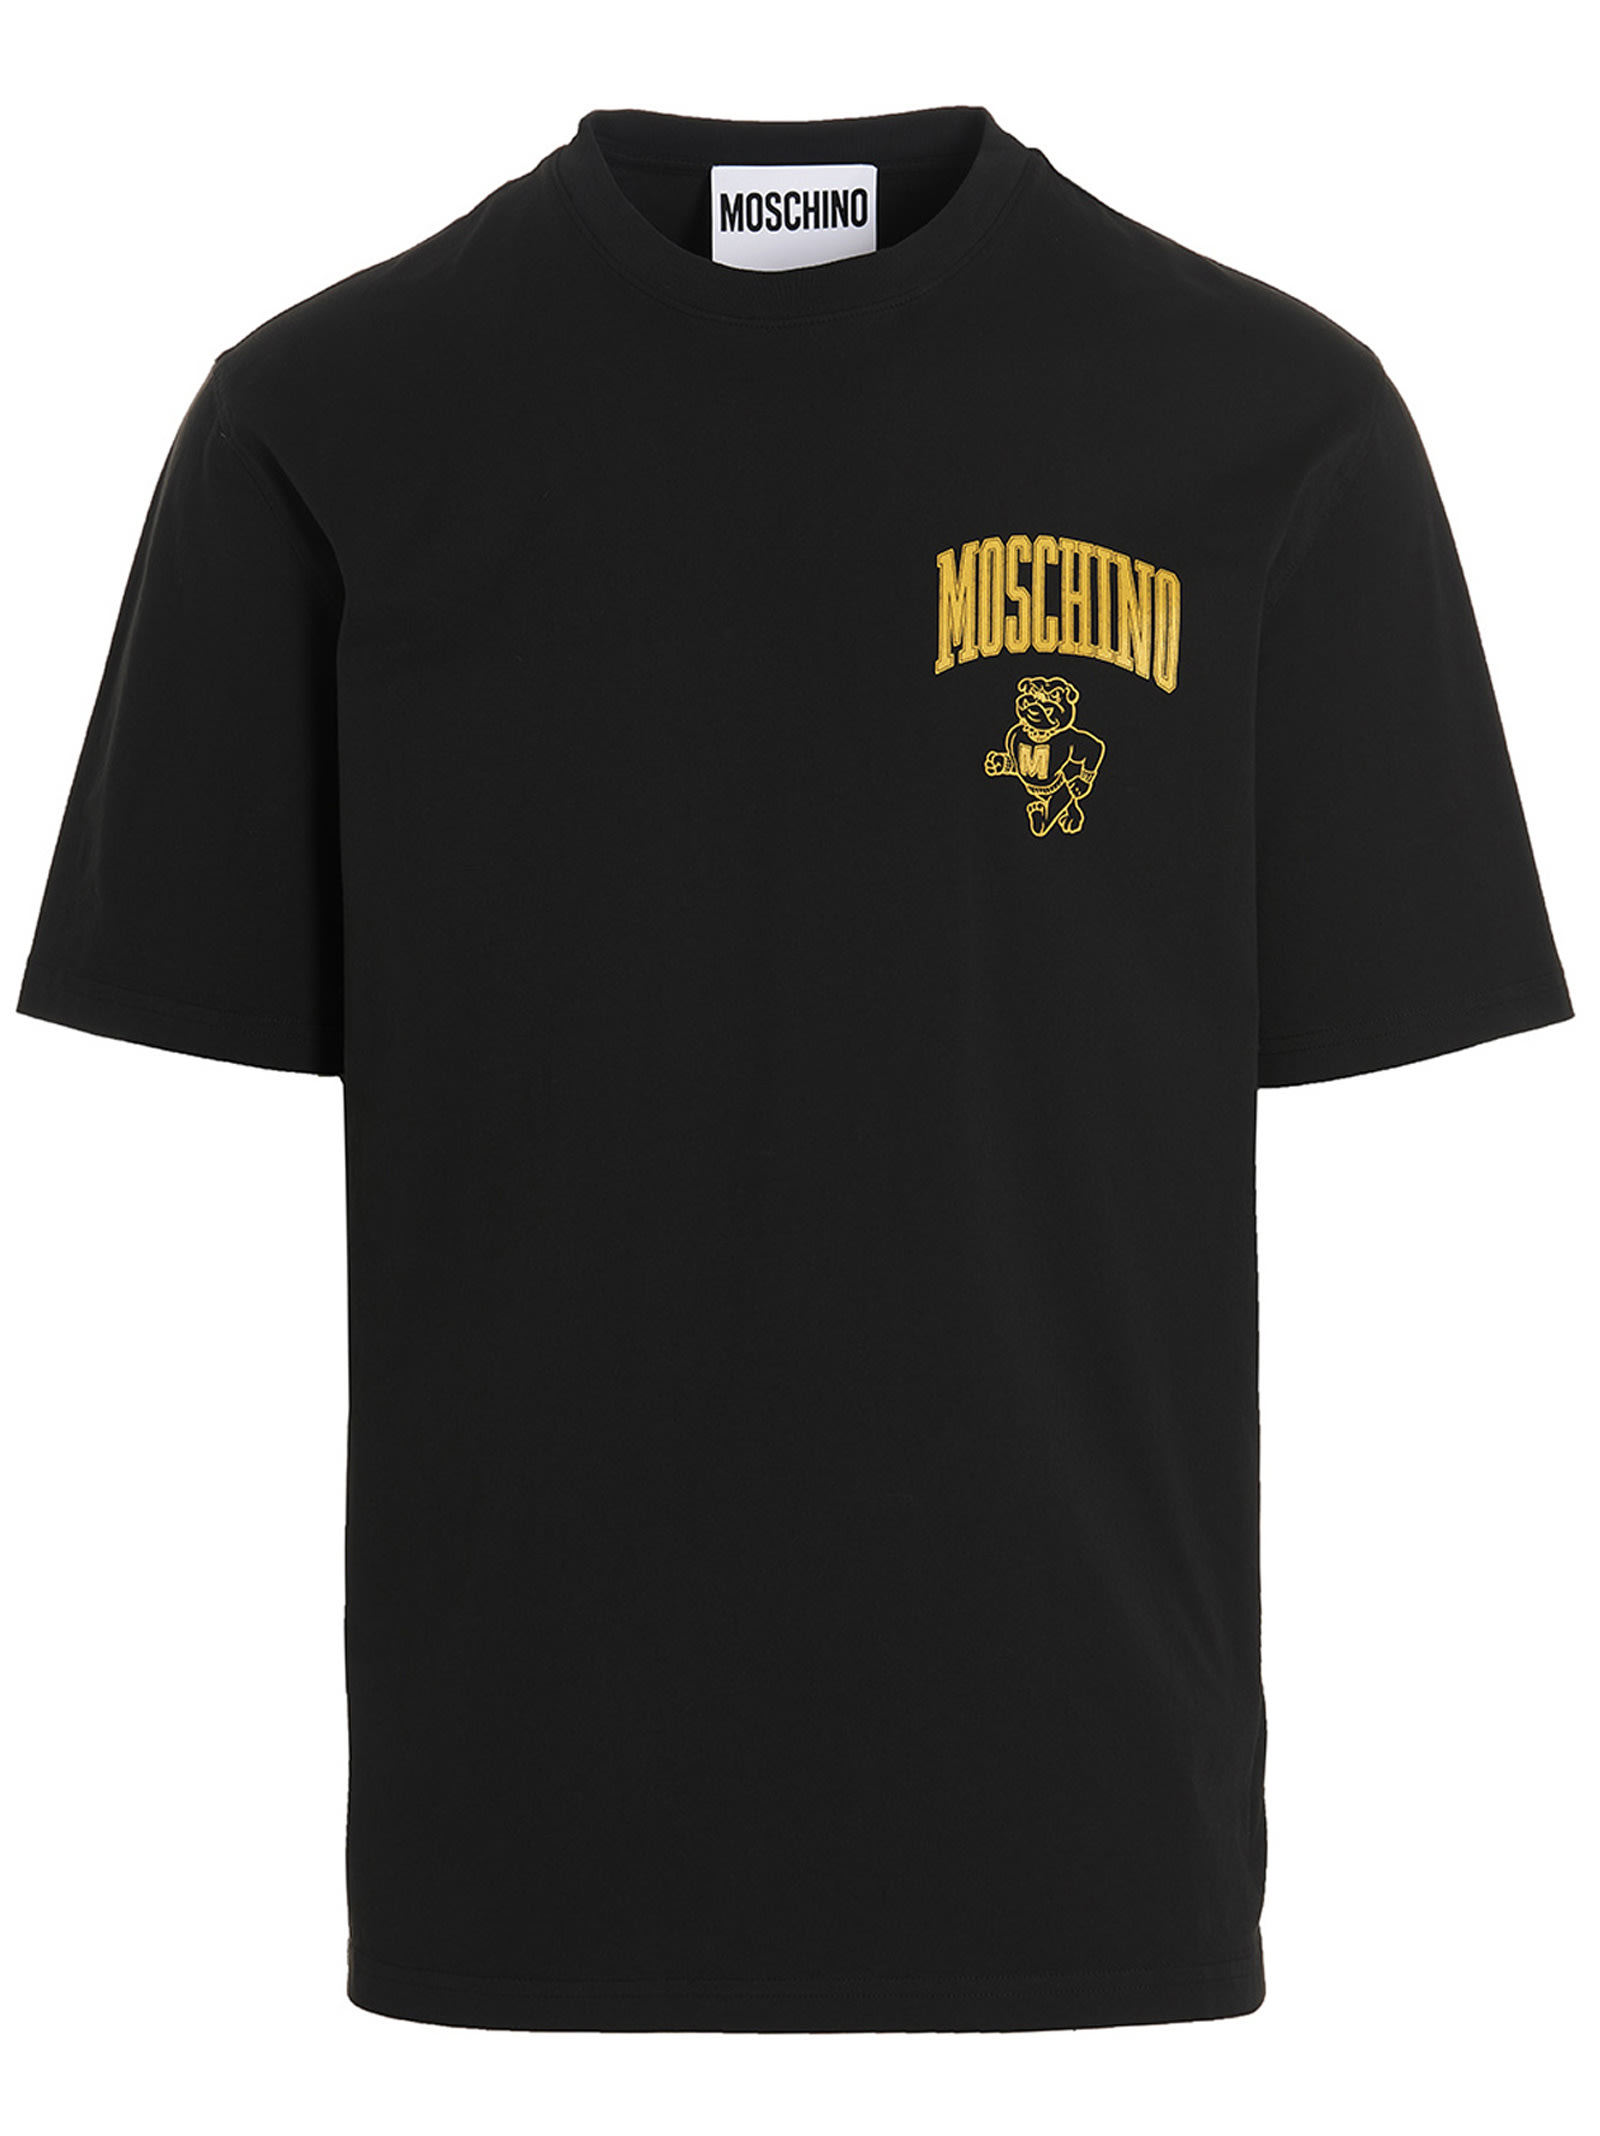 Moschino college T-shirt